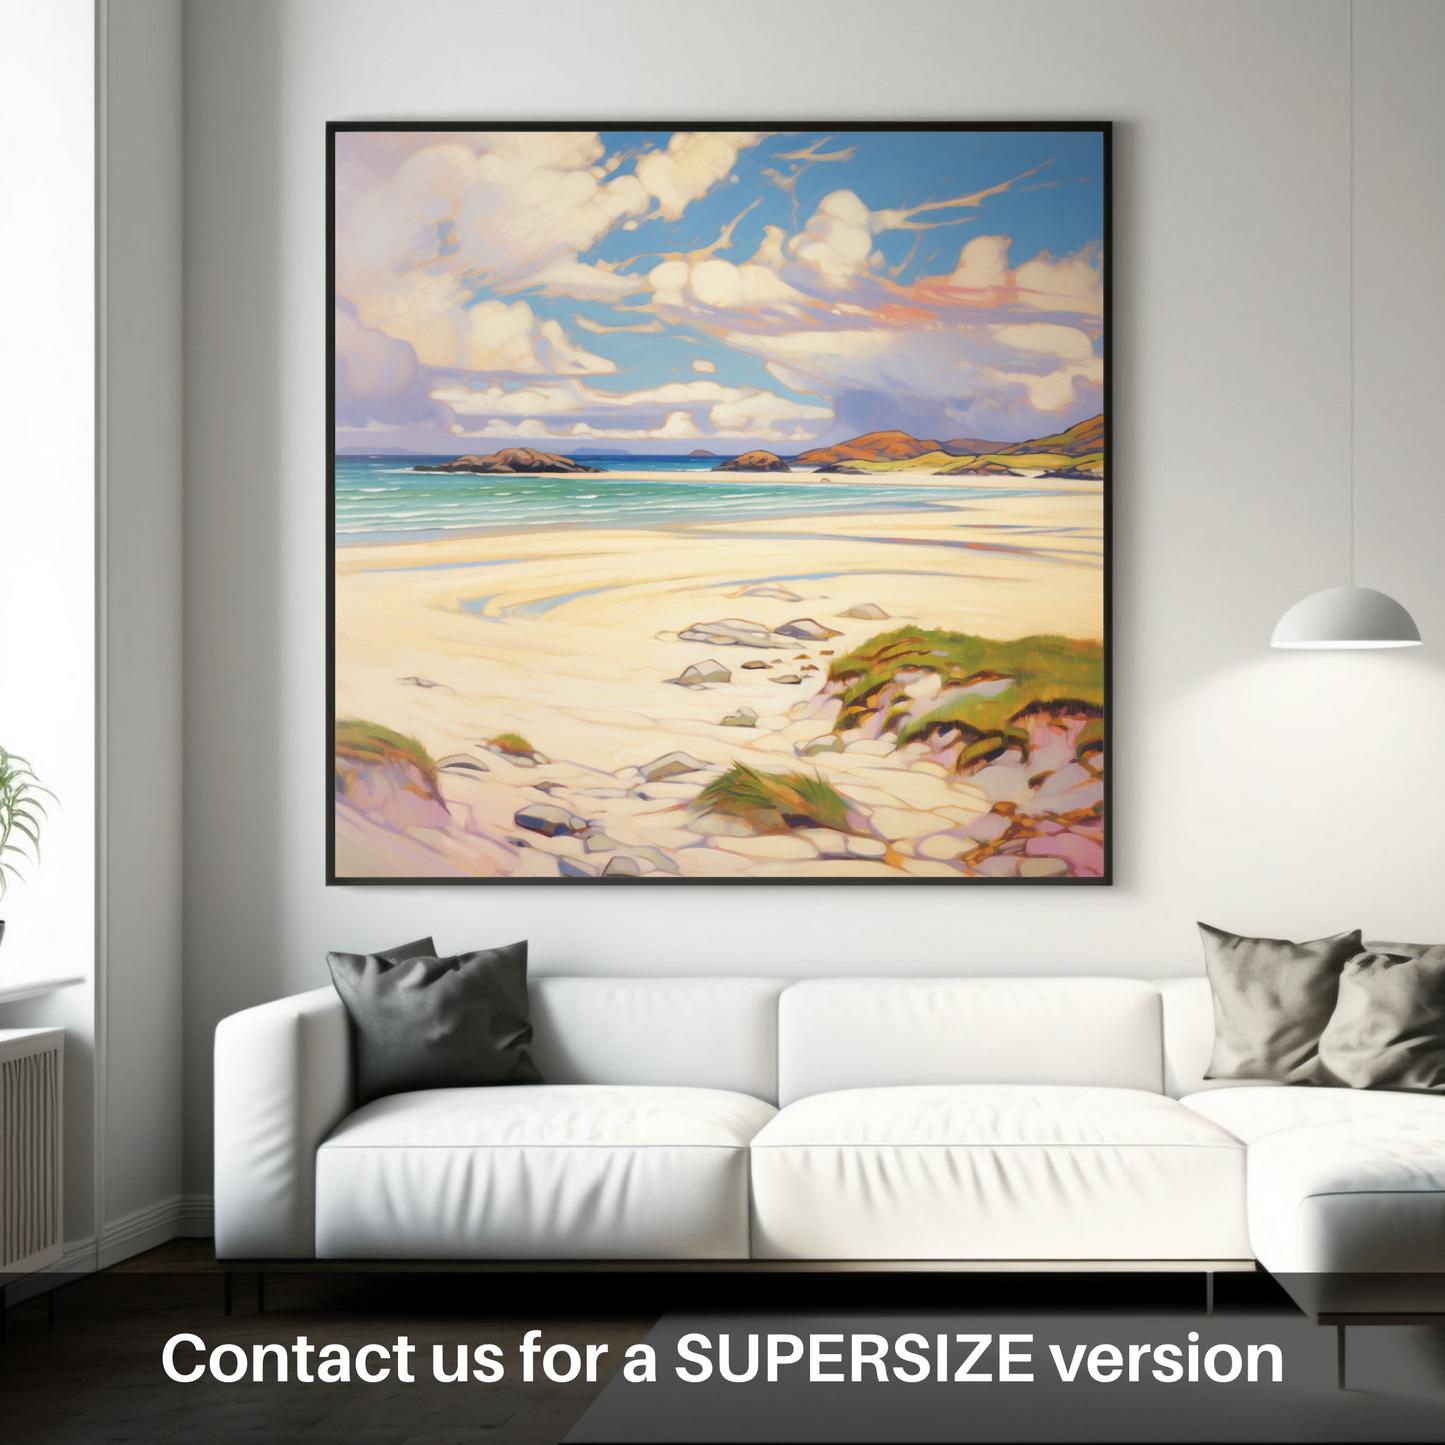 Huge supersize print of Luskentyre Sands, Isle of Lewis in summer